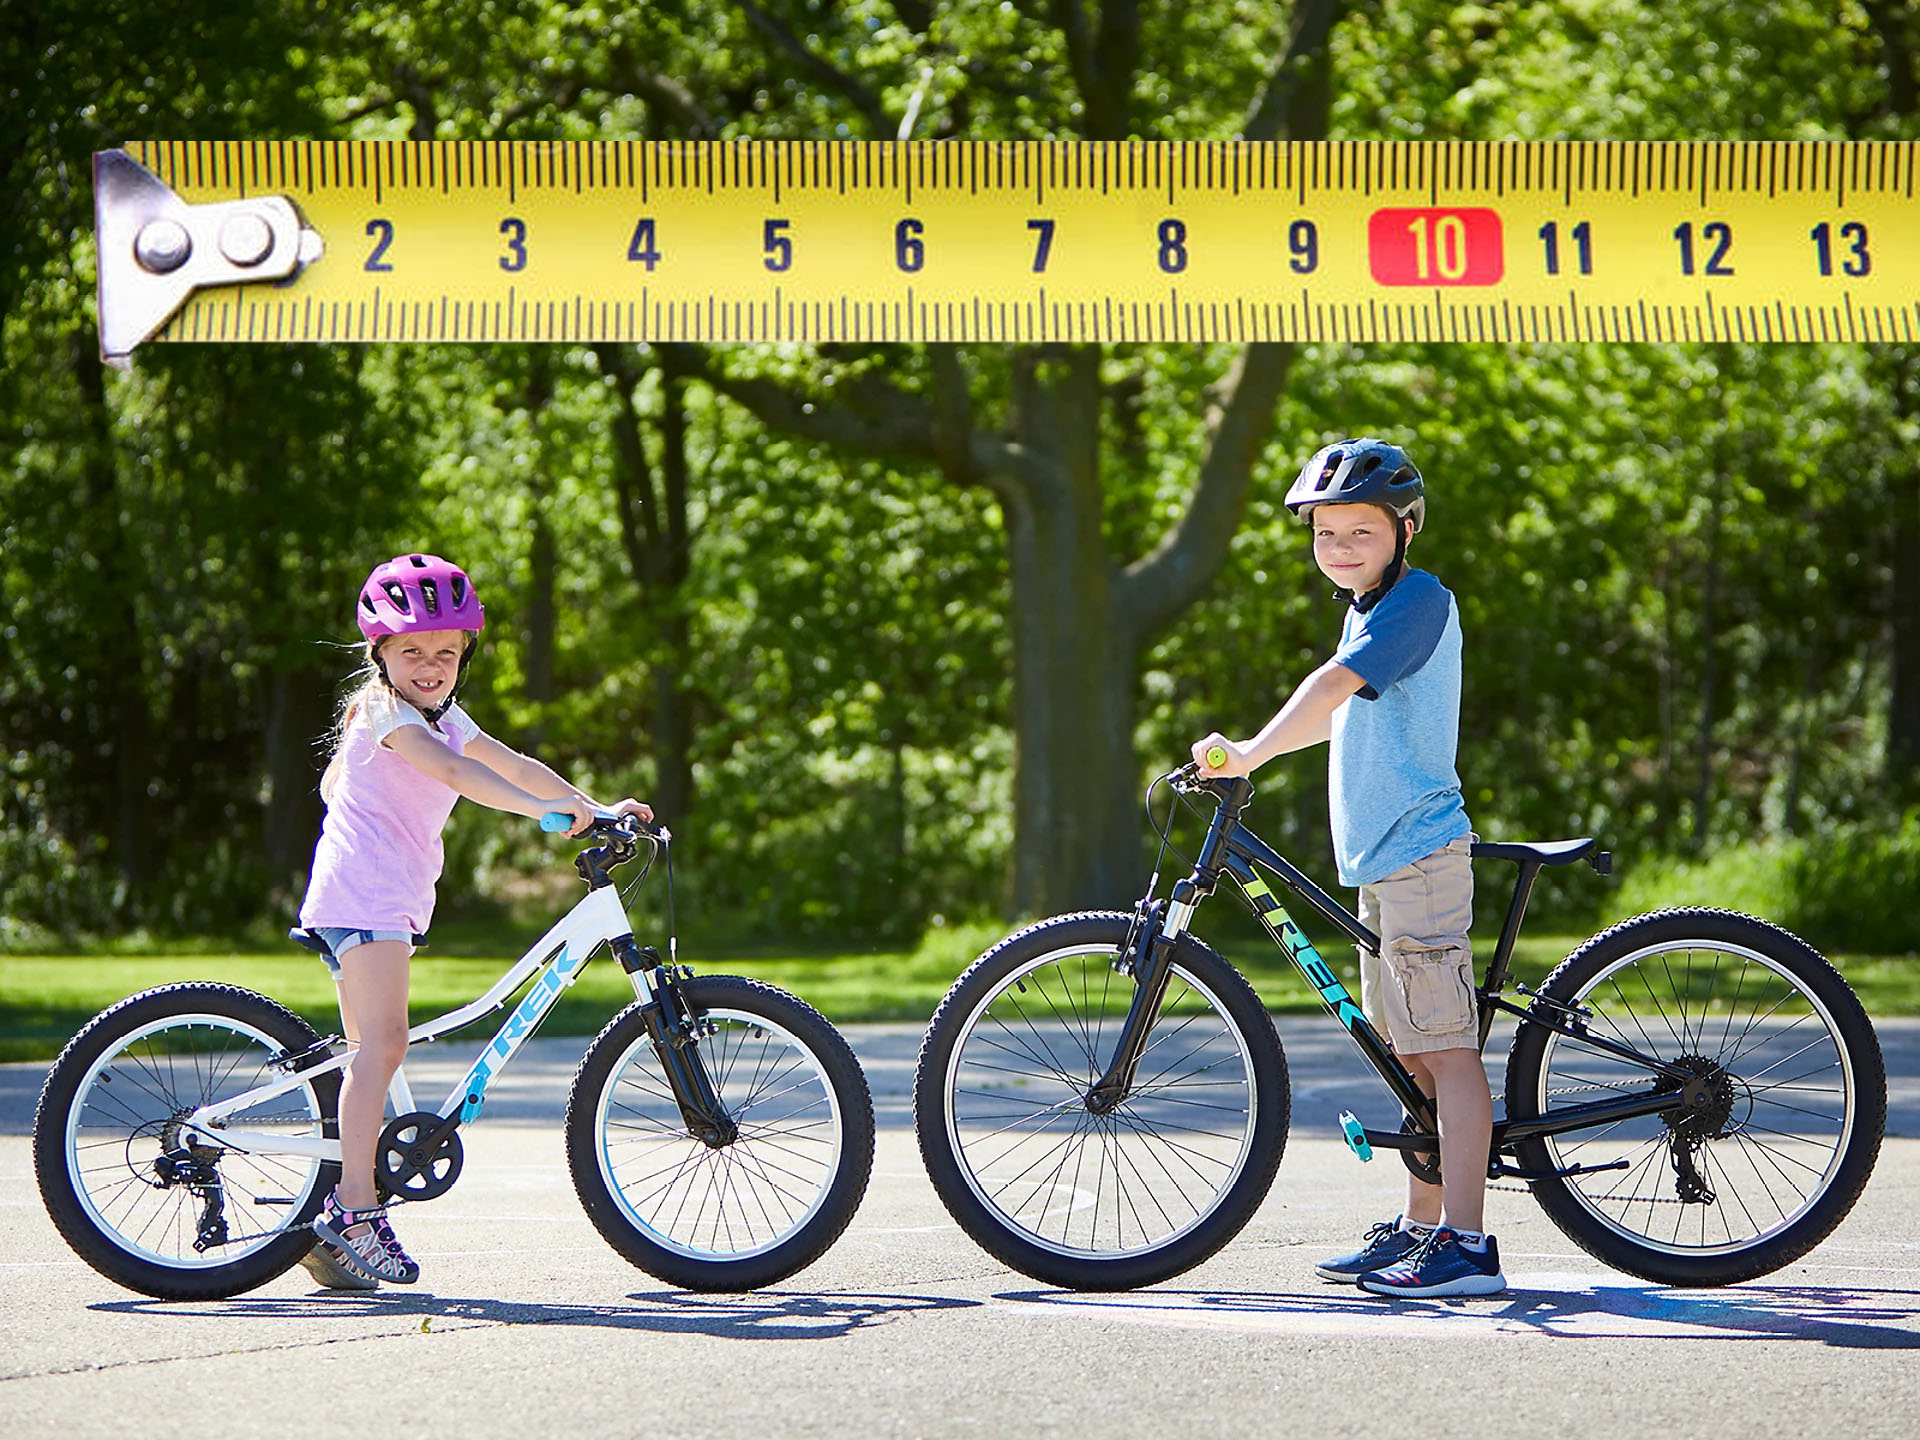 Laste jalgratta suuruse suunised